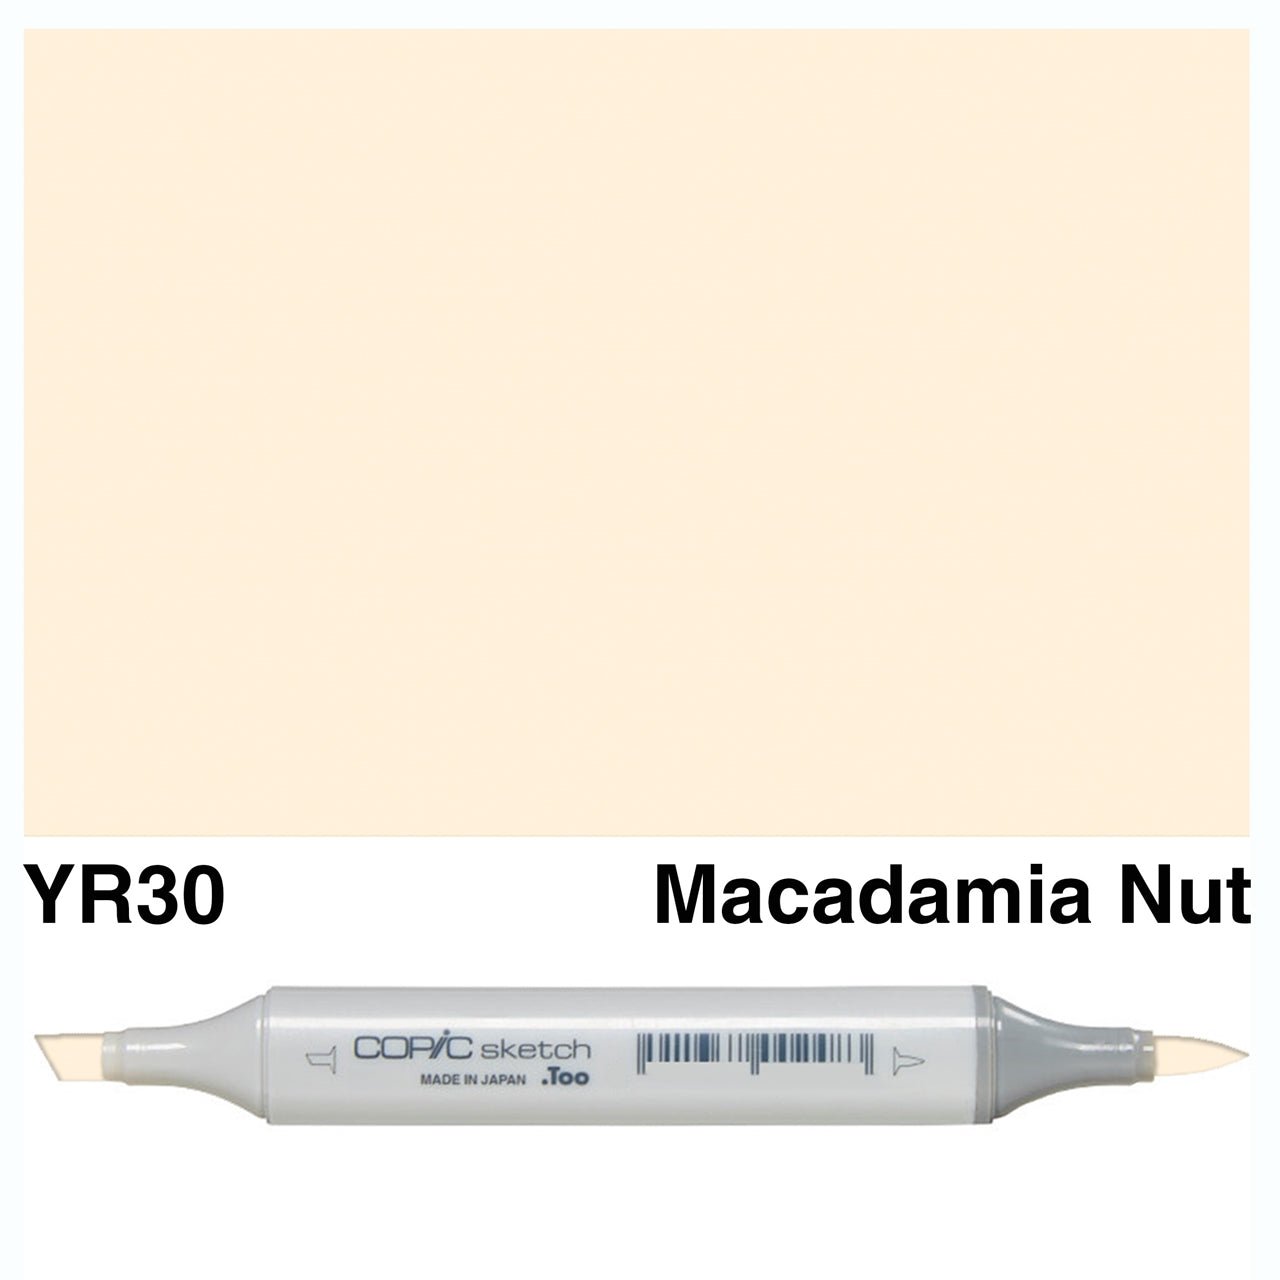 Copic Sketch YR30 Macadamia Nut - theartshop.com.au